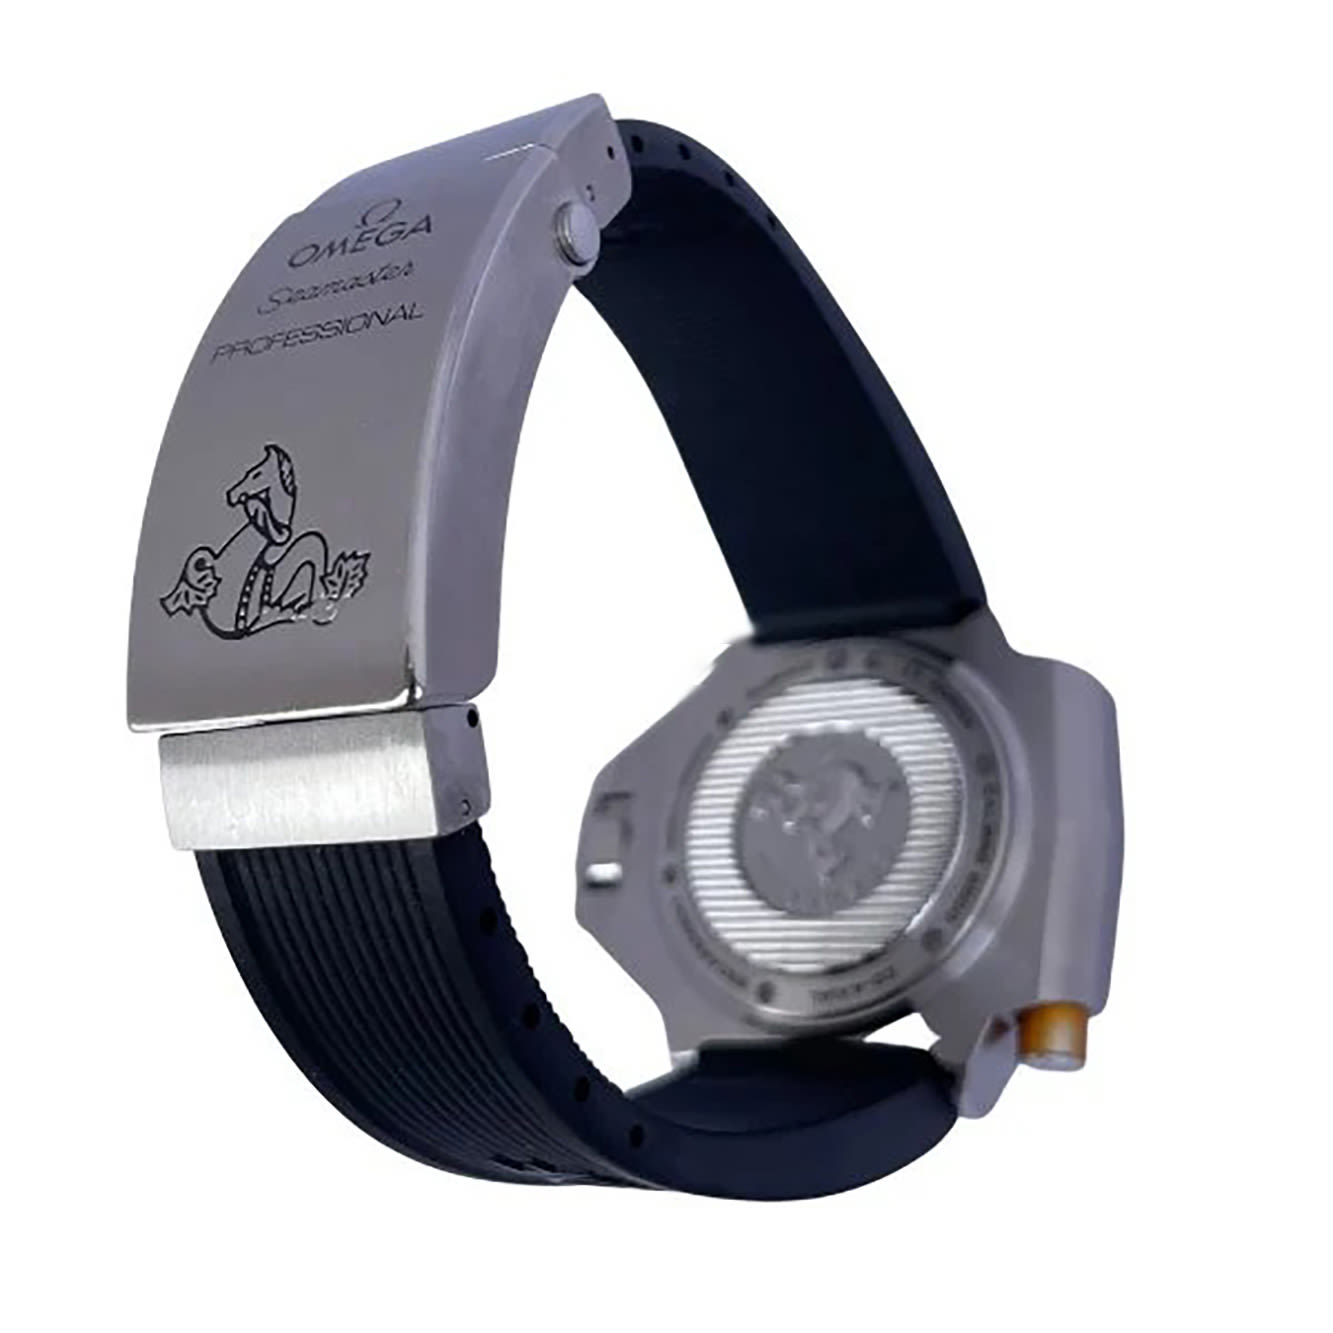 Omega Seamaster Ploprof wristwatch - Image 3 of 6